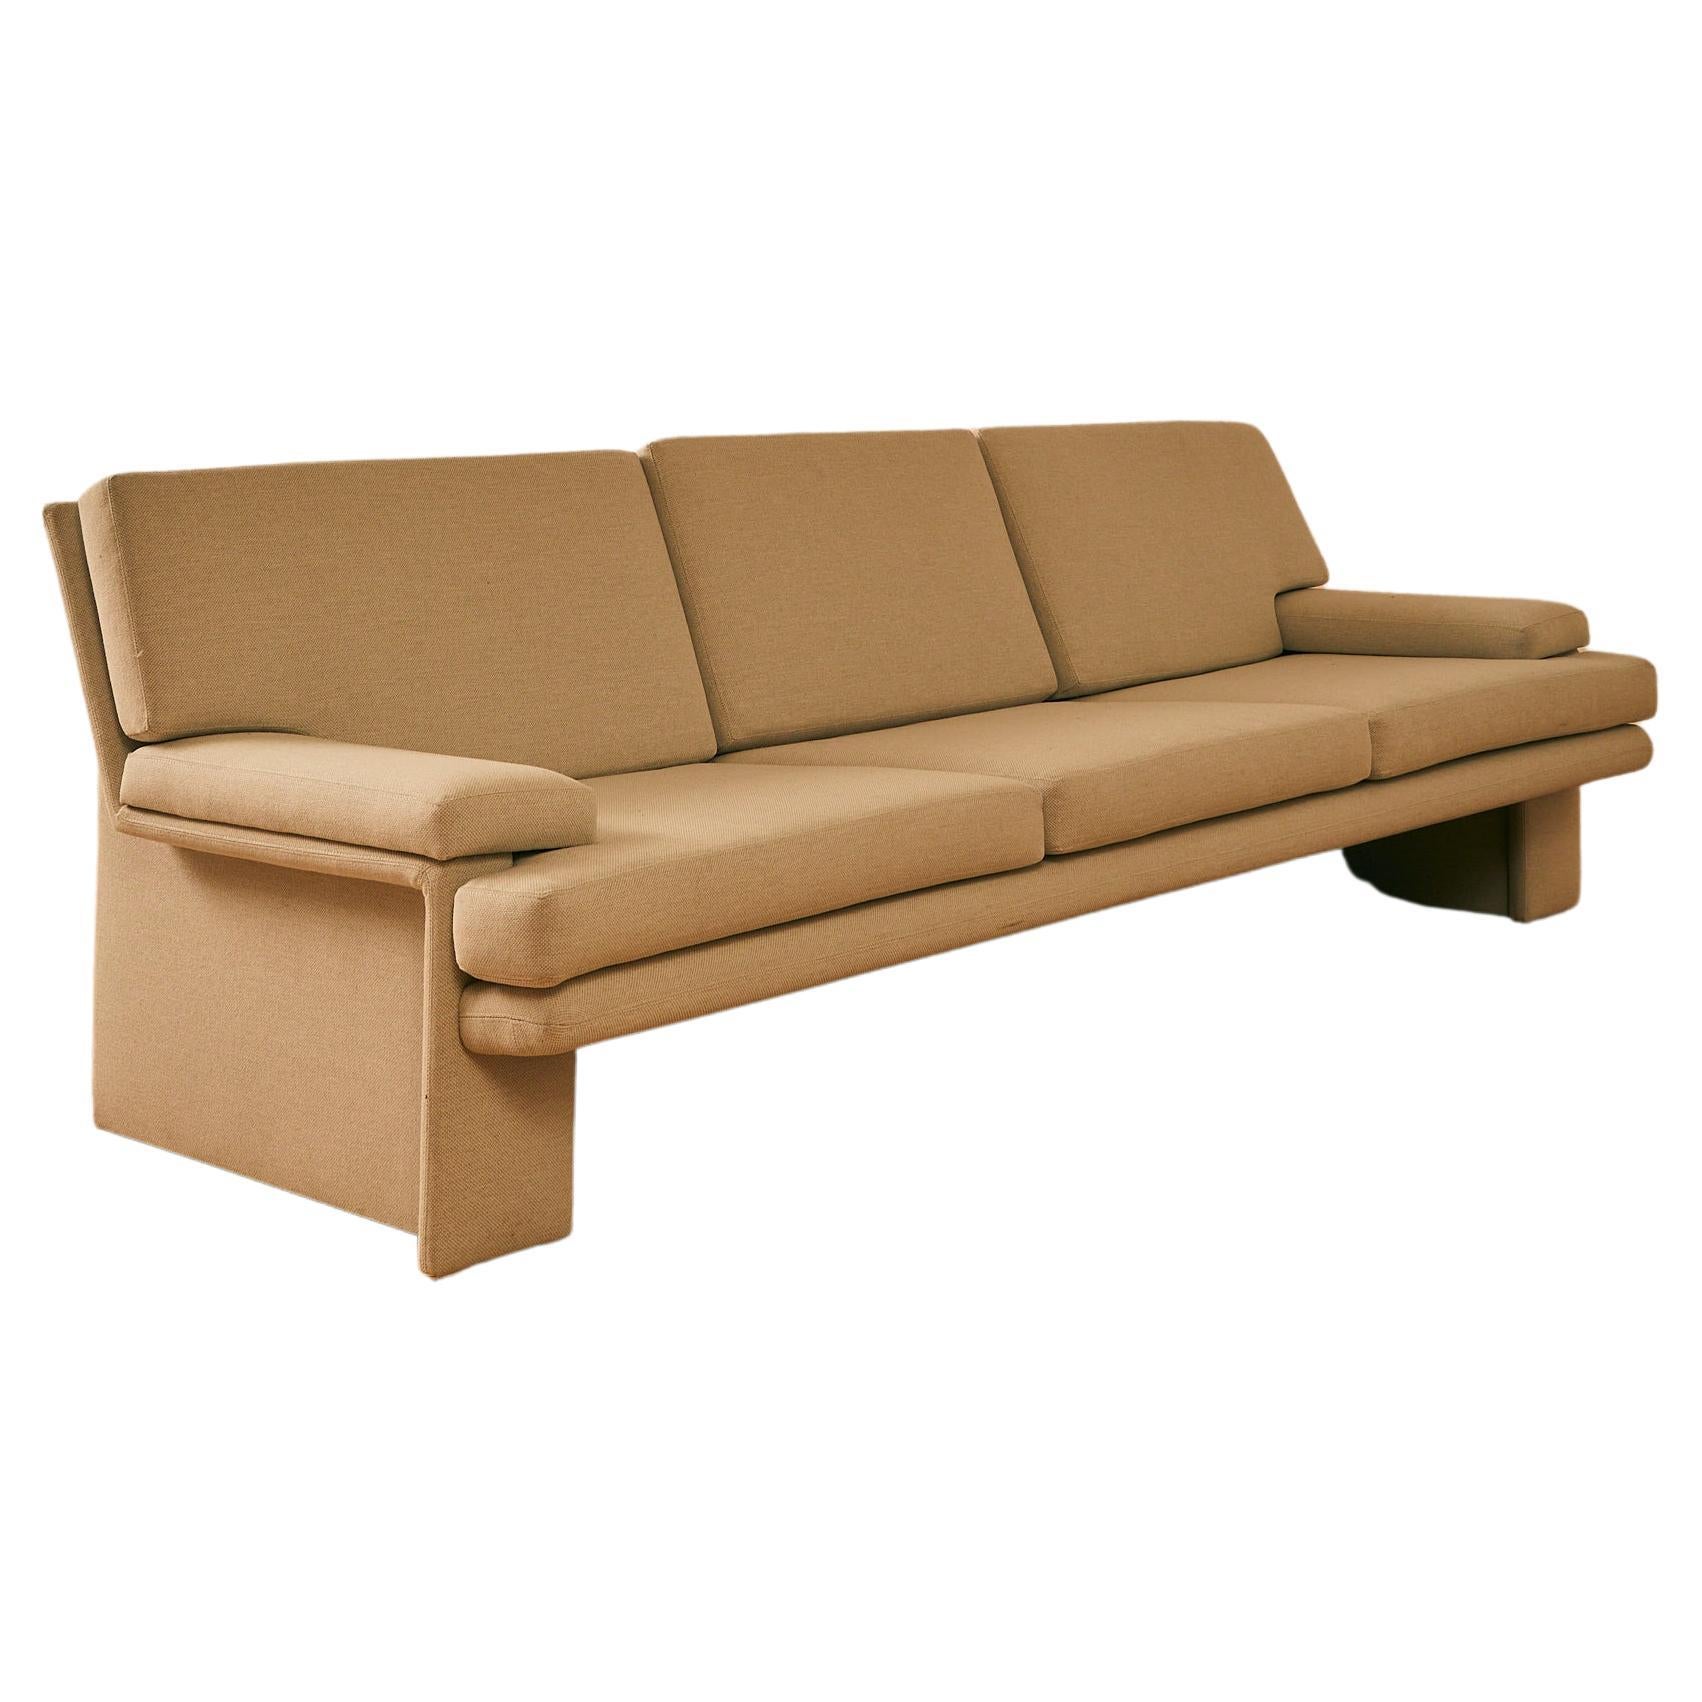 Canapé rectangulaire moderniste en vente